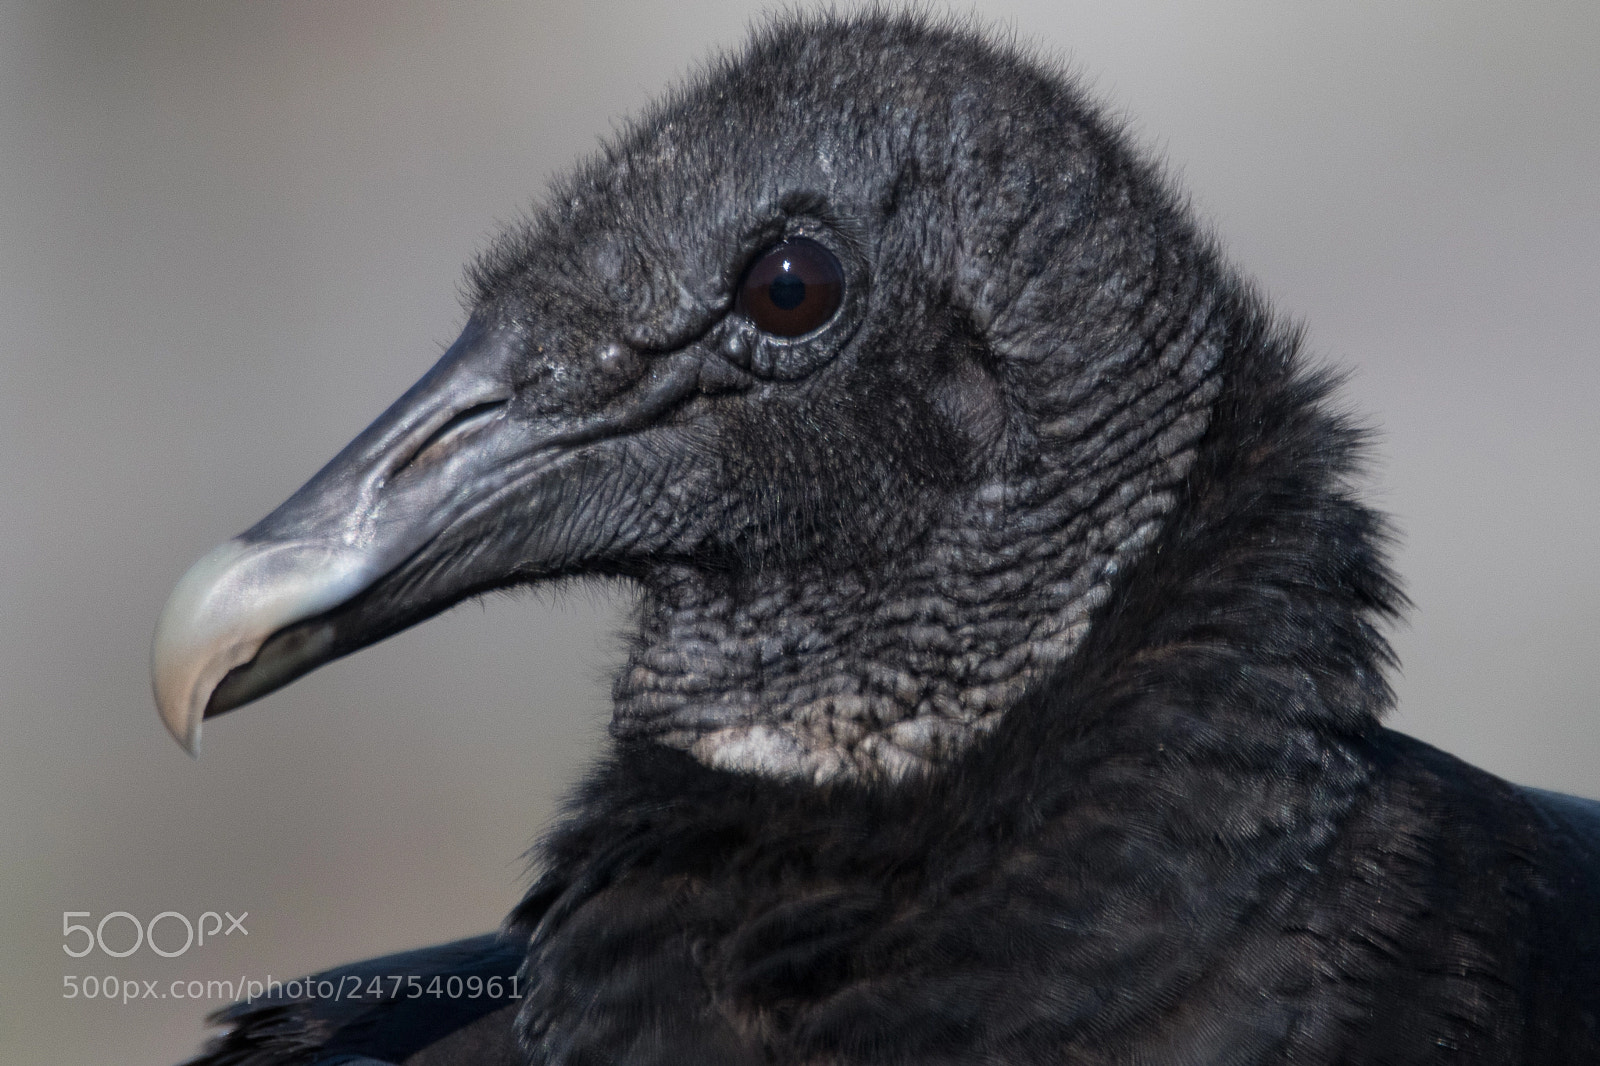 Nikon D500 sample photo. Black vulture profile portrait photography